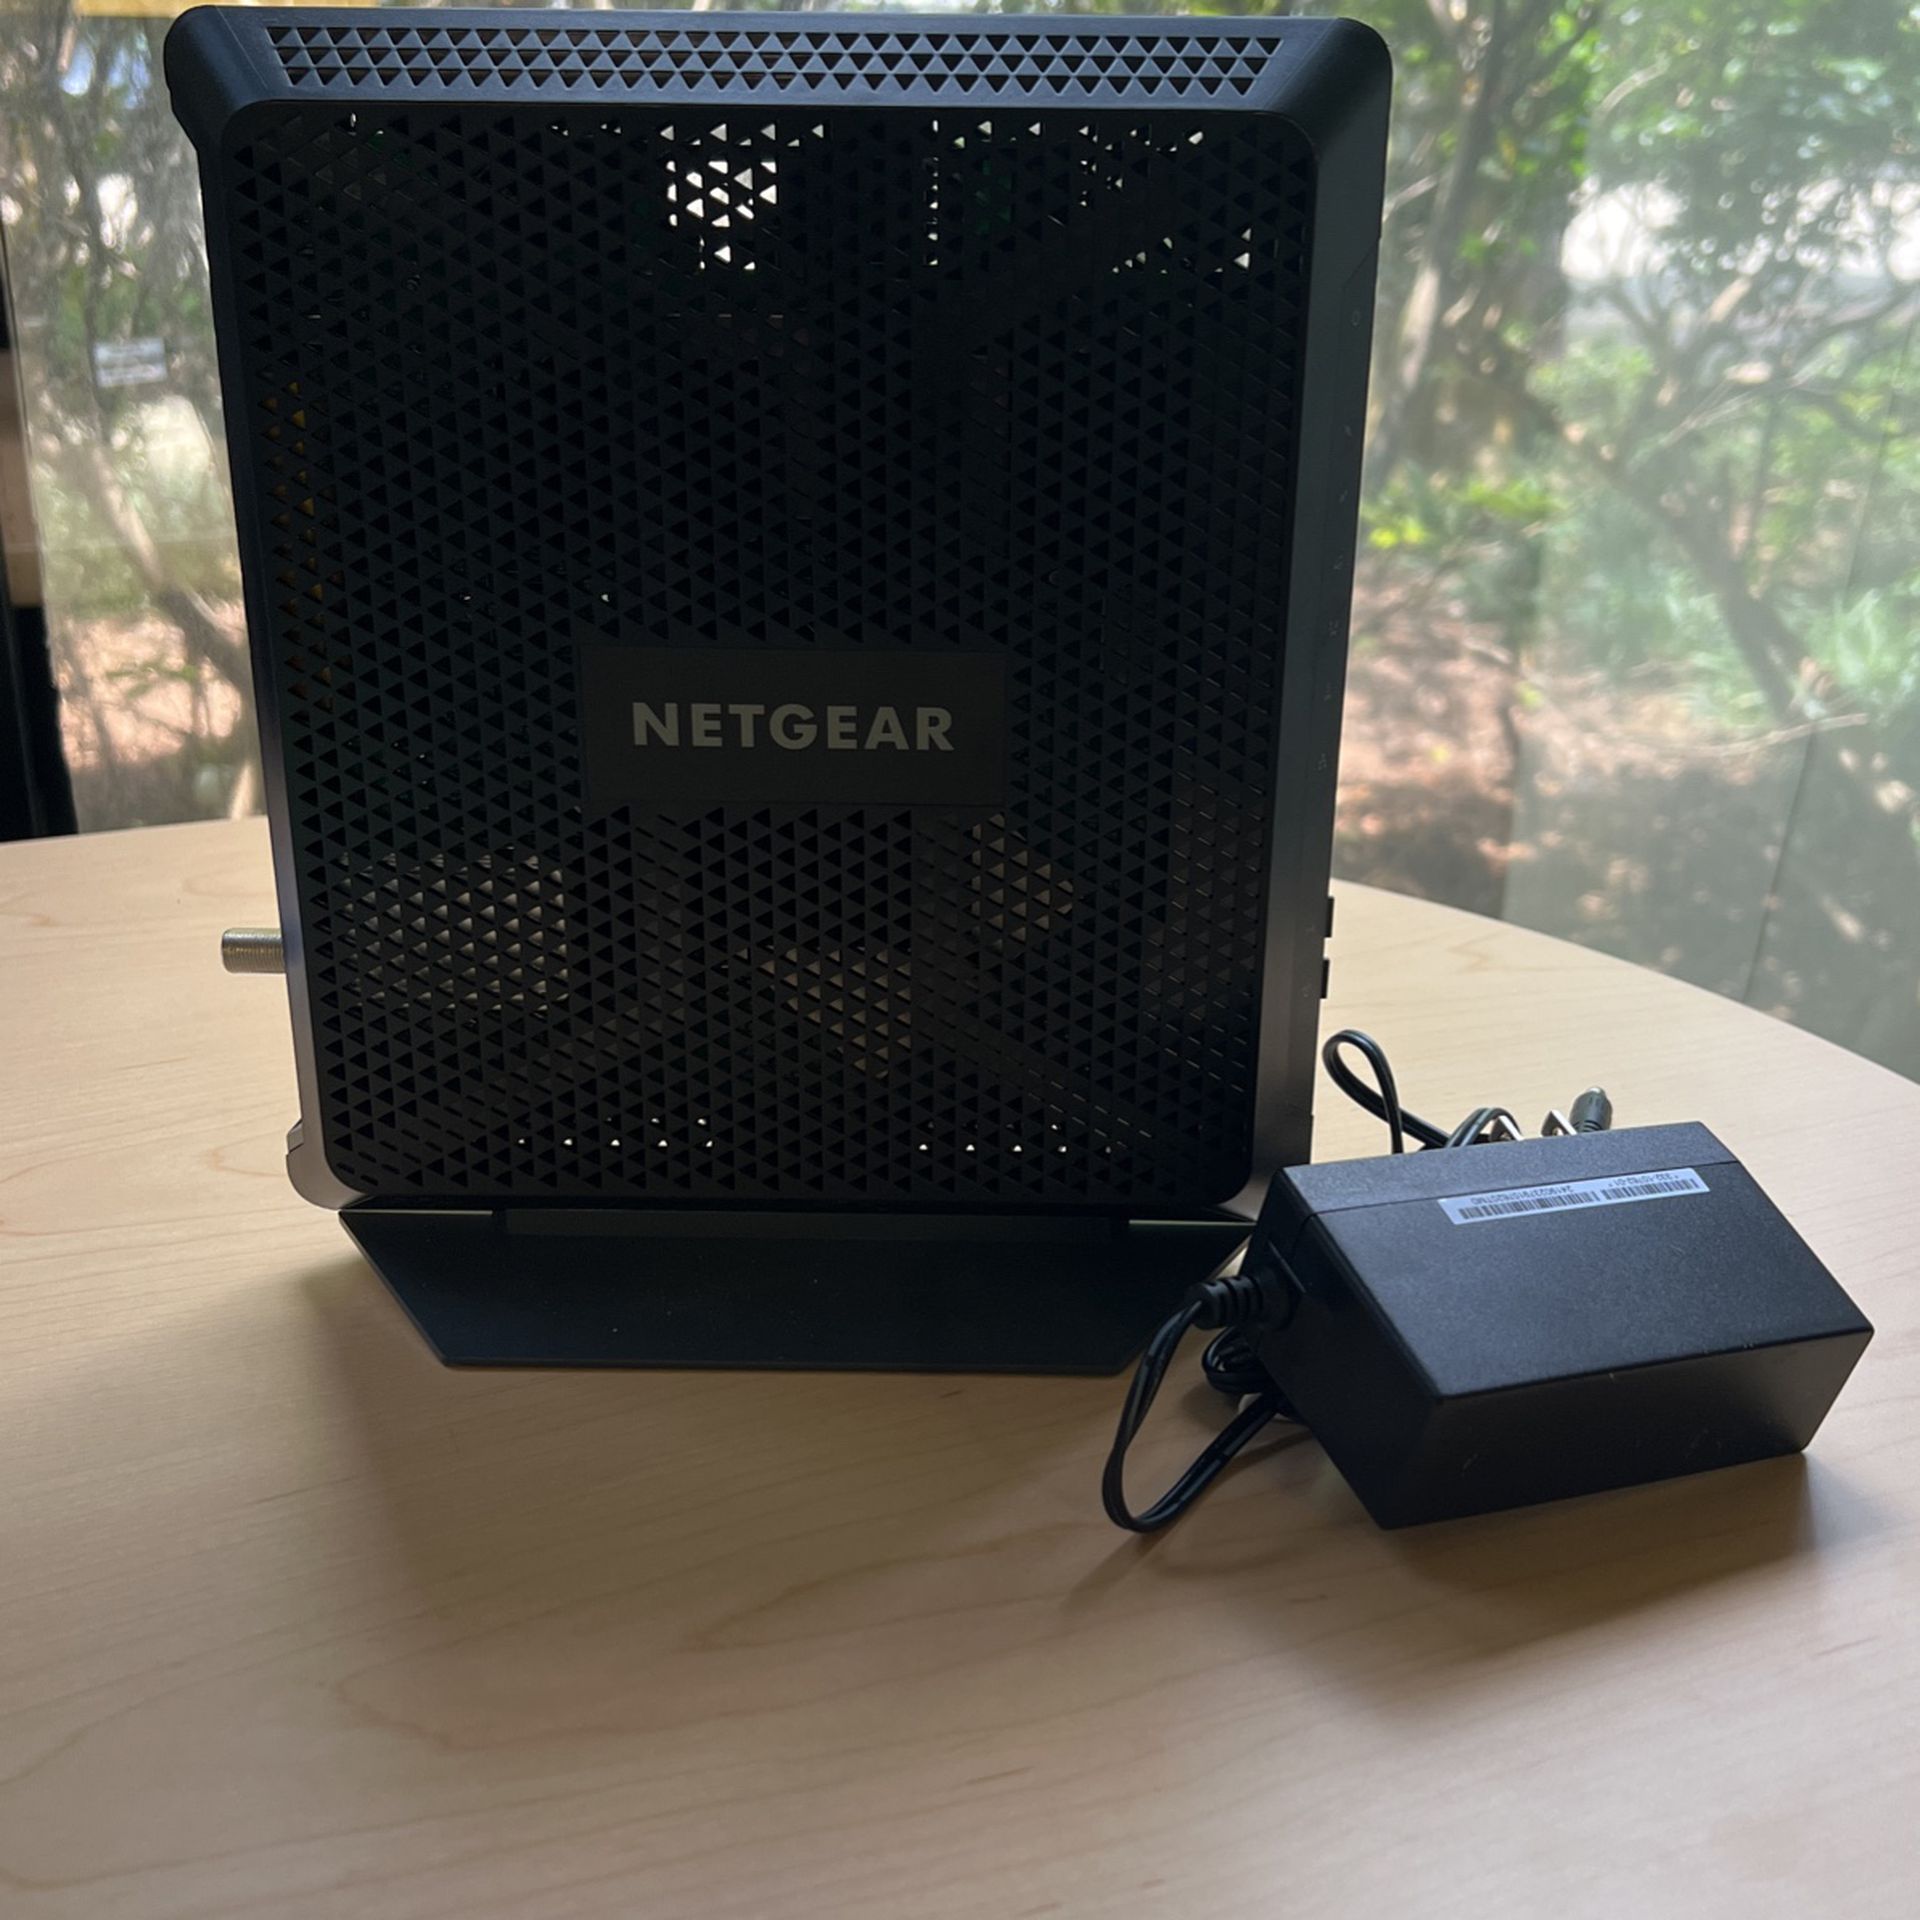 Netgear AC1900 WiFi Modem Router